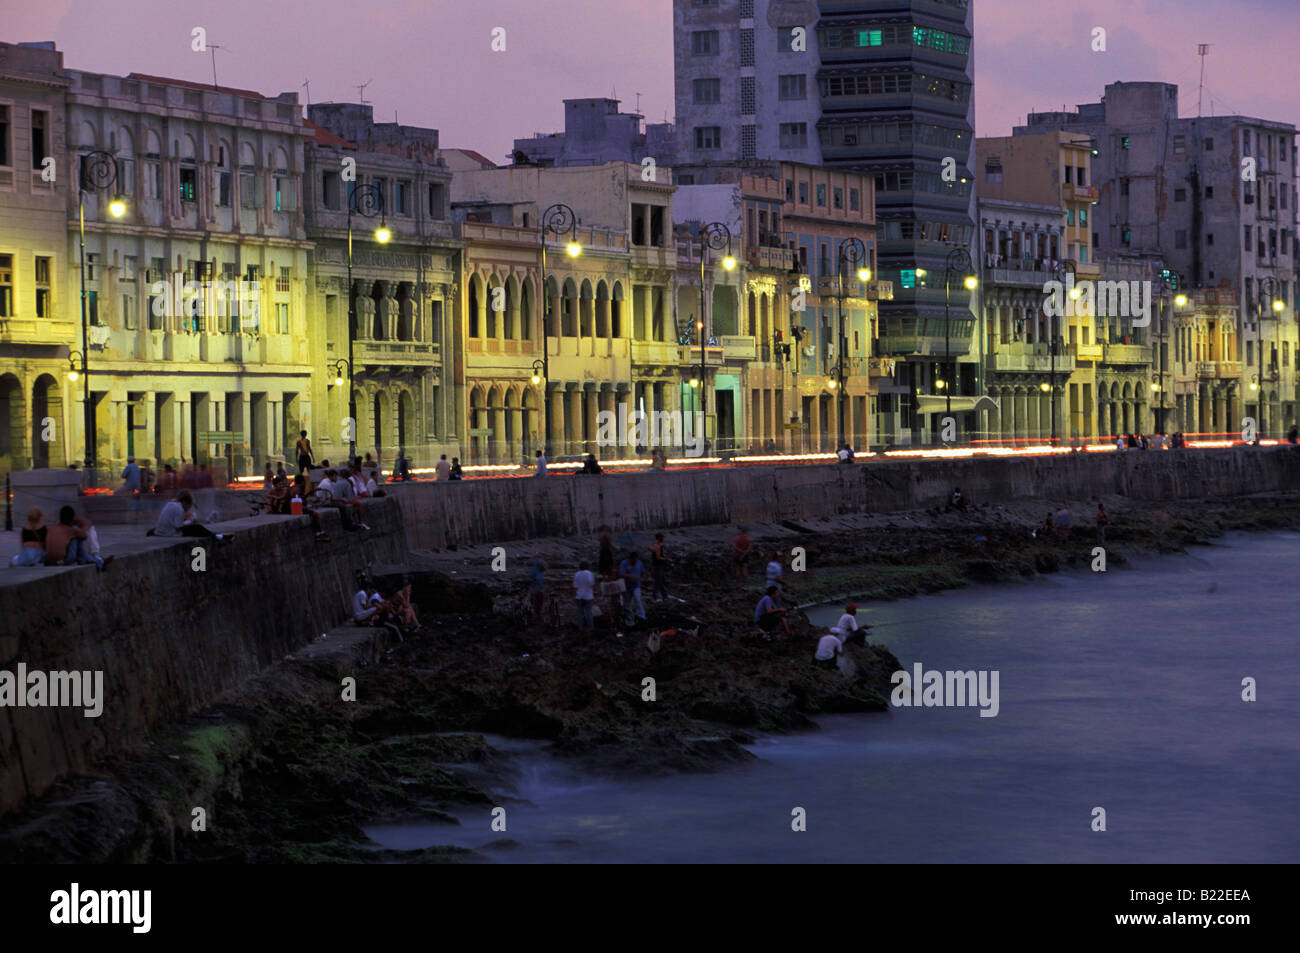 Beleuchtete Malecon in Havanna Kuba Karibik Abend Stockfoto